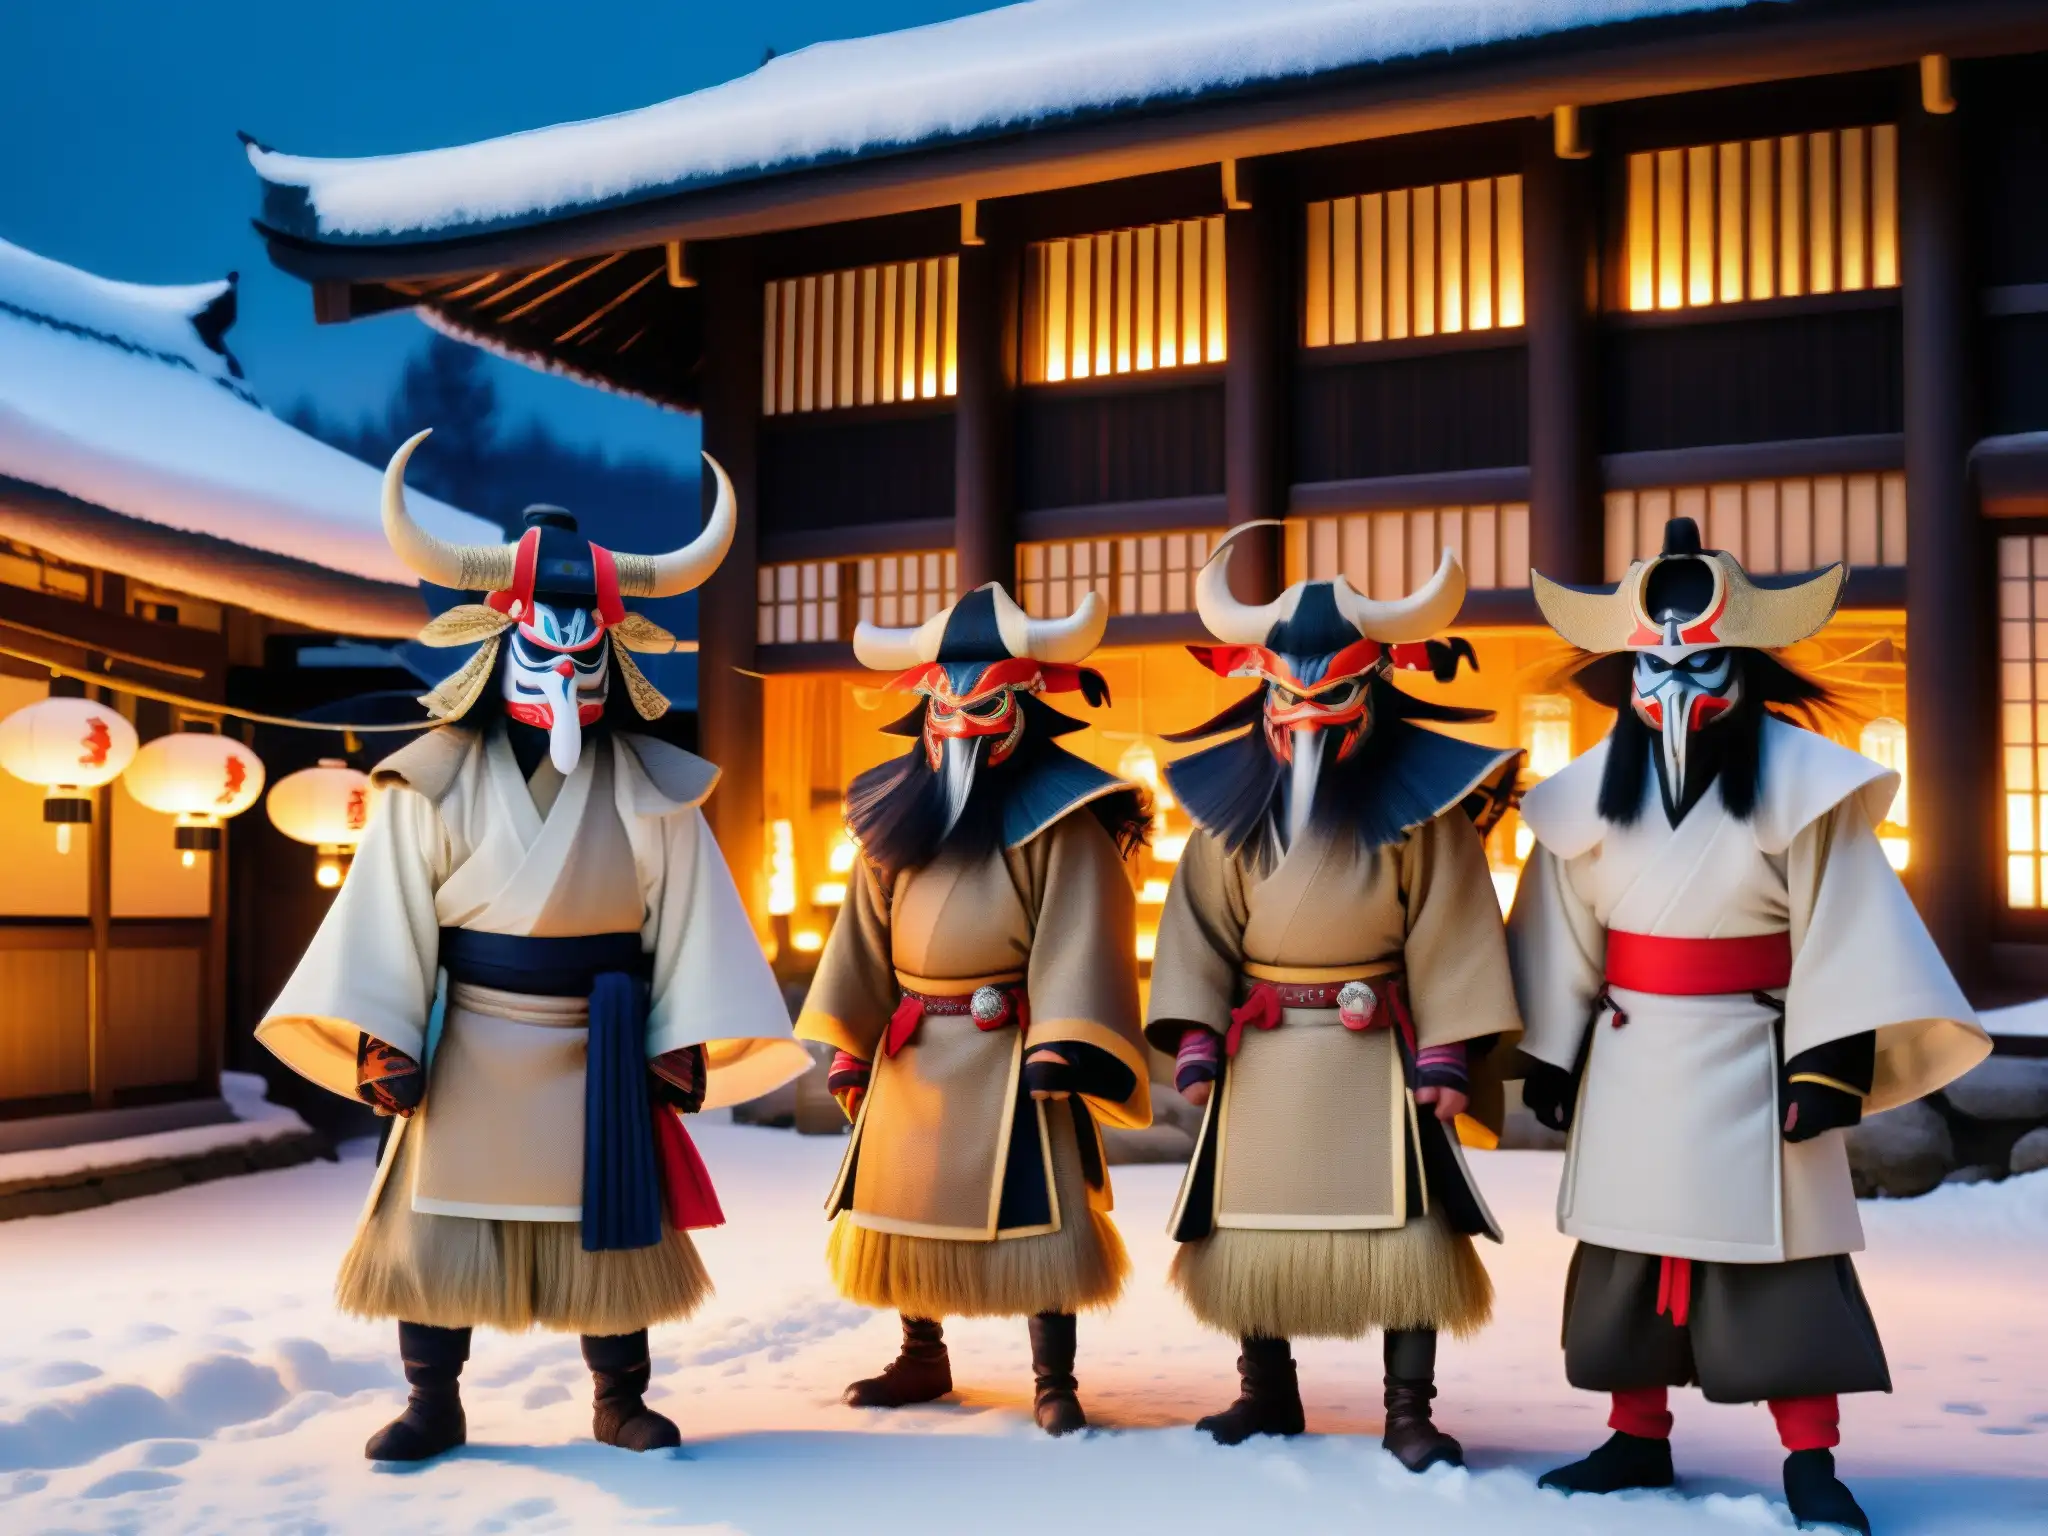 Grupo de Namahage, demonios de la leyenda del Año Nuevo en un pueblo nevado de Japón, con cálidas linternas y figuras amenazantes